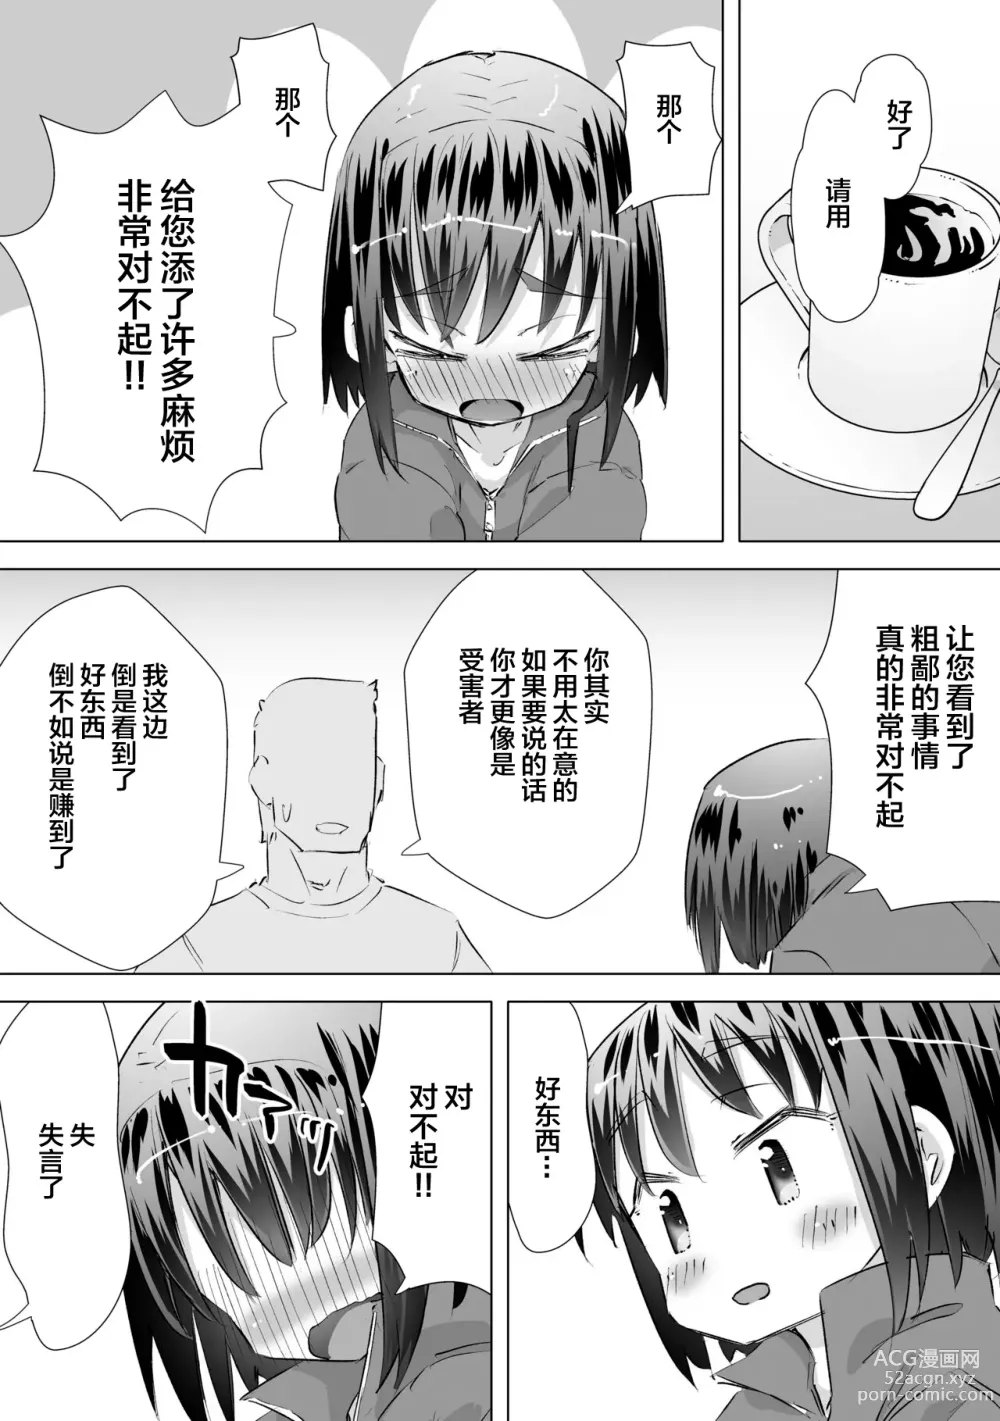 Page 14 of doujinshi 在别人家的院子里忍不住尿了出来被大叔发现后不为人知的事情